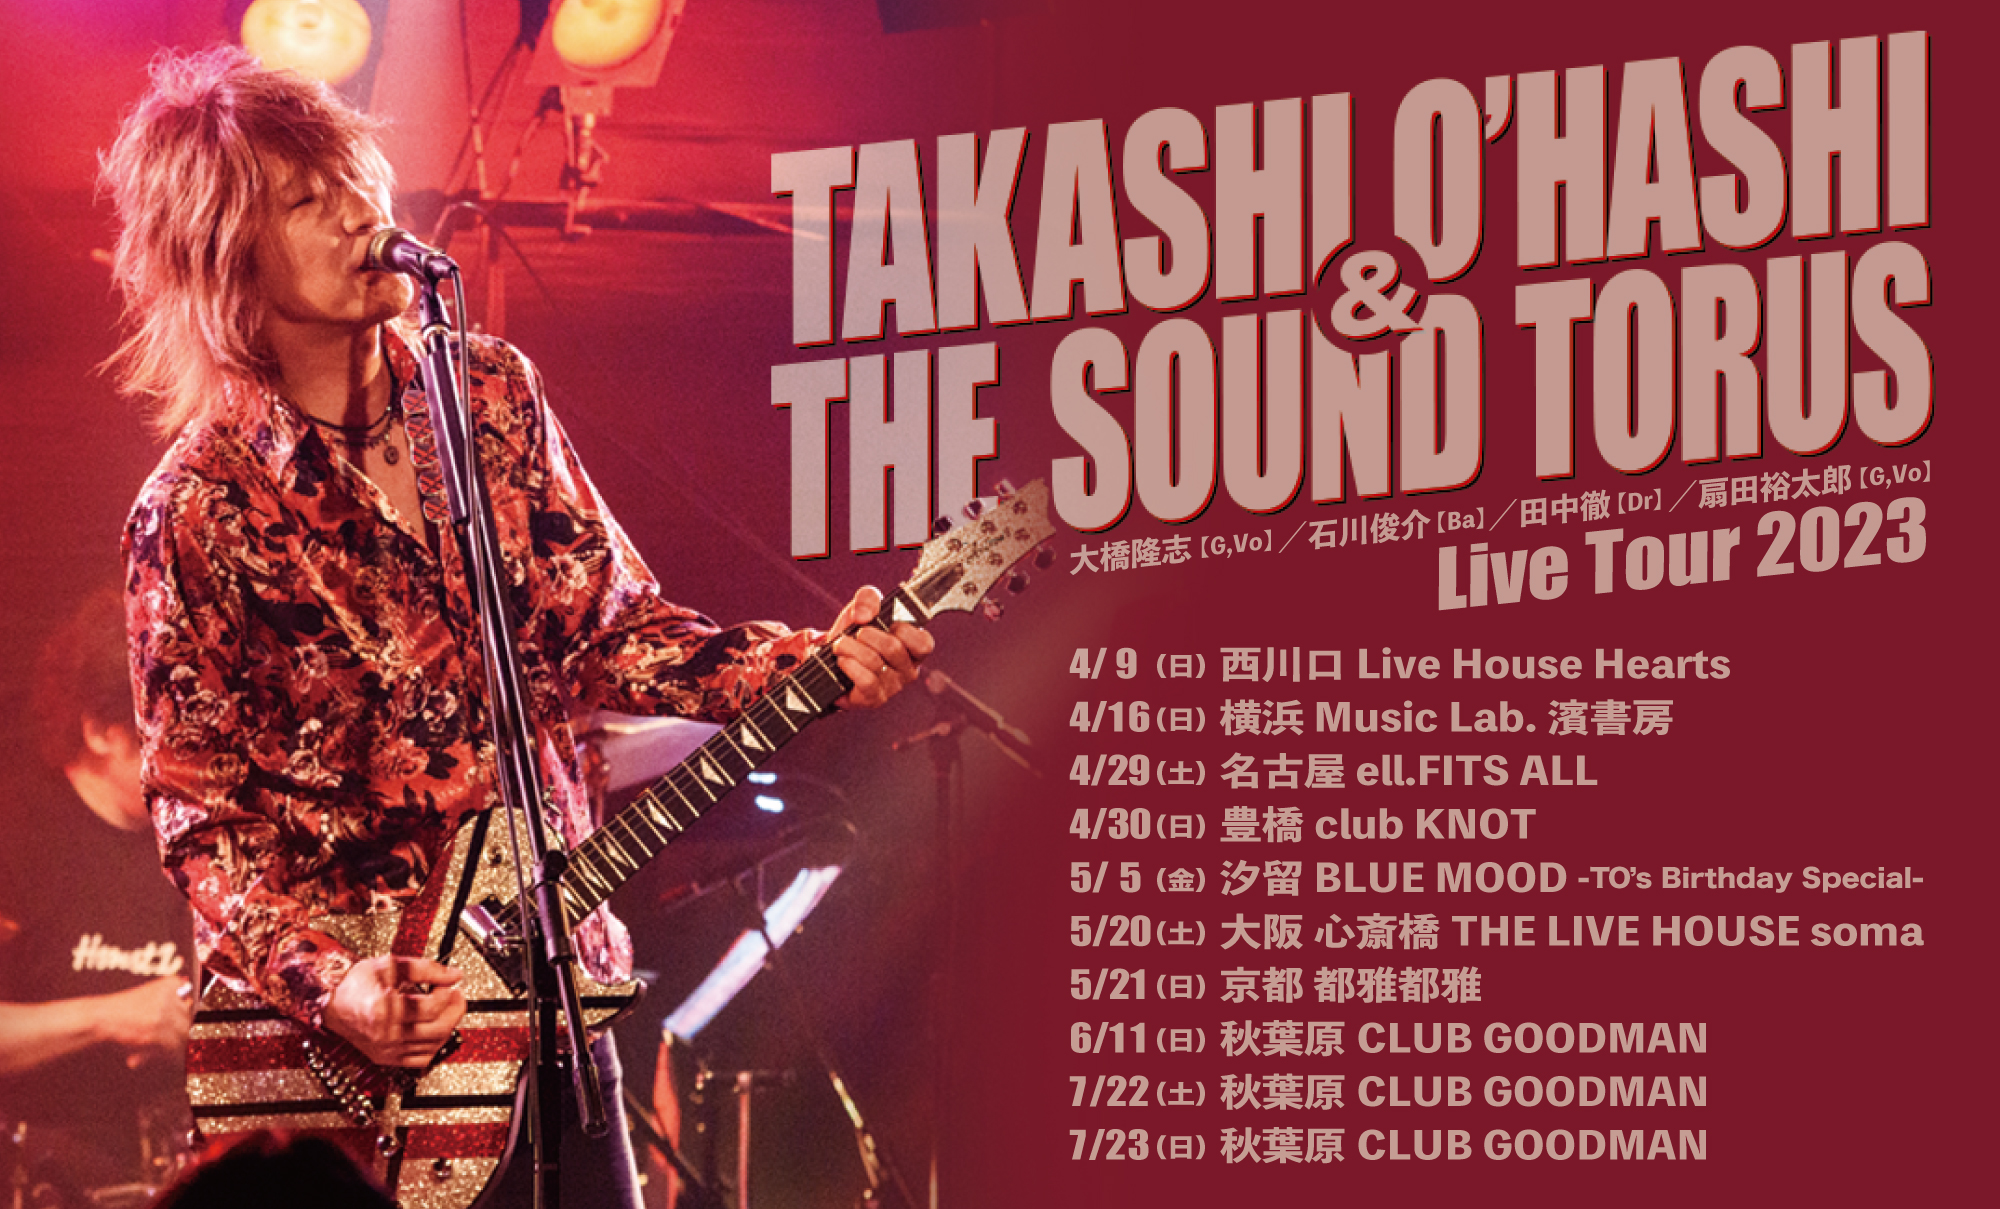 Takashi O'hashi & The Sound Torus Live Tour 2023